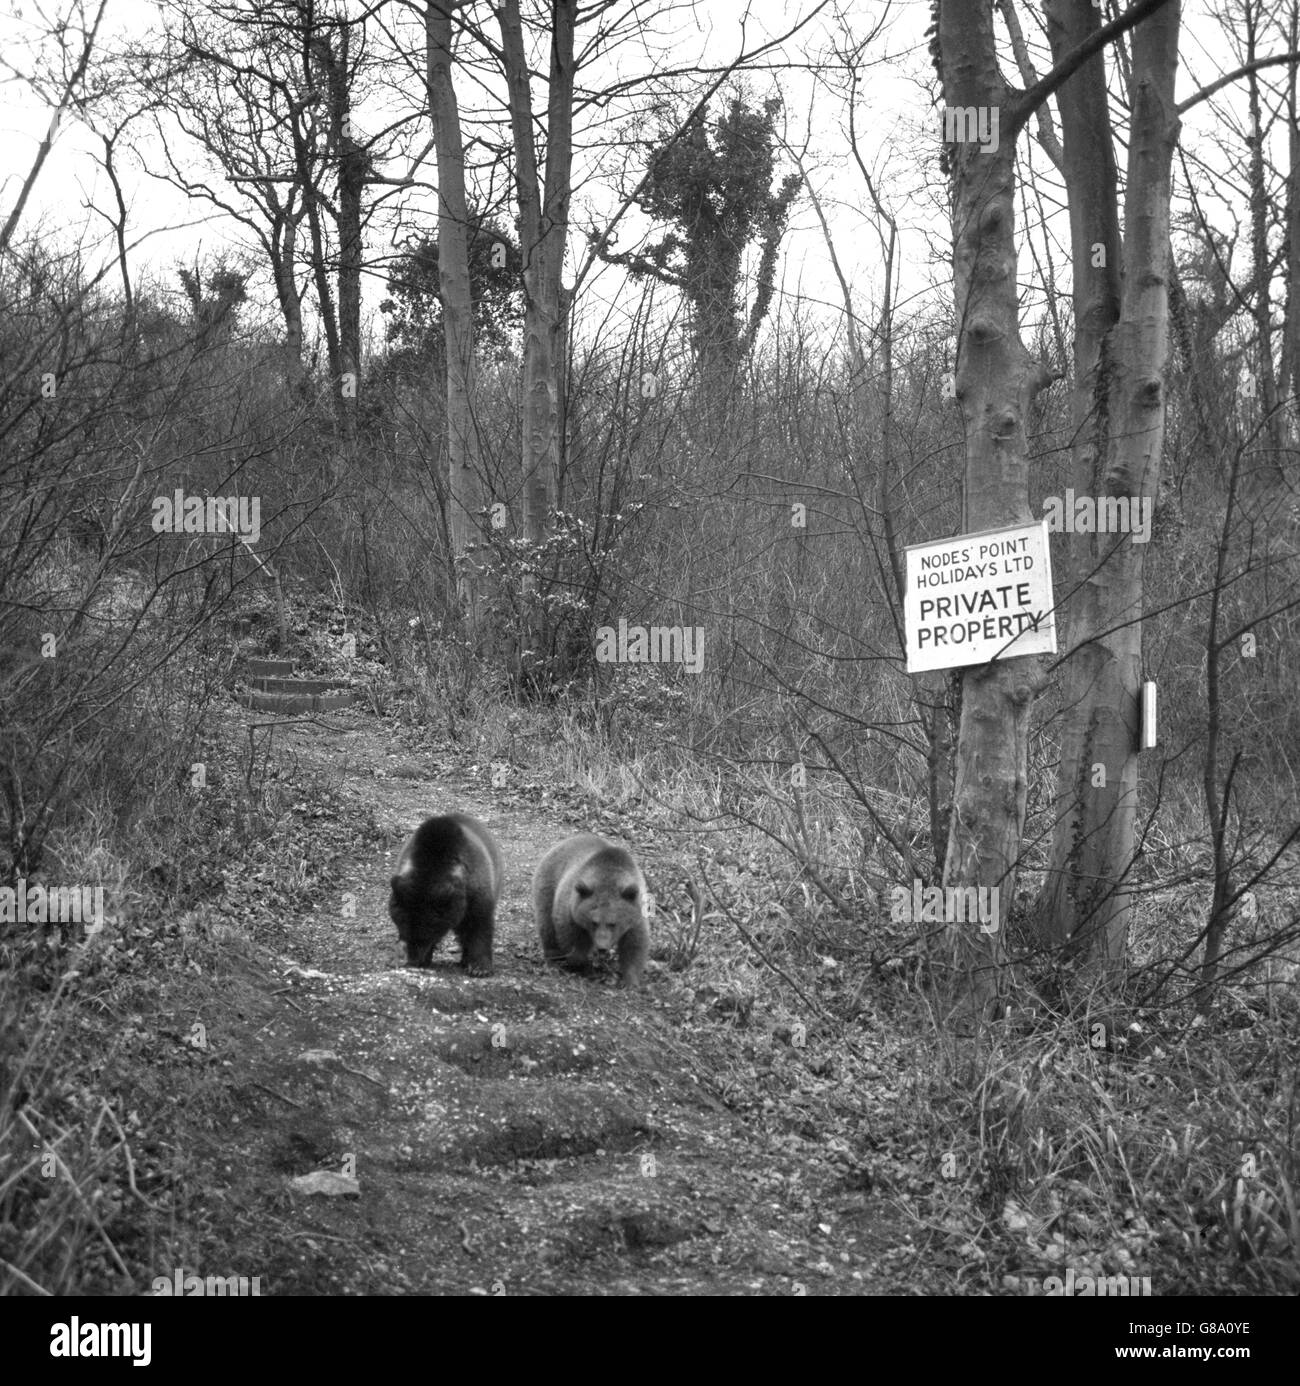 Les ours russes Nikita et Valentina ont été repris peu de temps avant après avoir fui un zoo de Ryde, sur l'île de Wight, il y a quinze jours. Ils ont été abattus avec des fléchettes anesthésiques par un vétérinaire du zoo de Londres, puis emmenés en minibus à un zoo voisin de Sandown. Banque D'Images